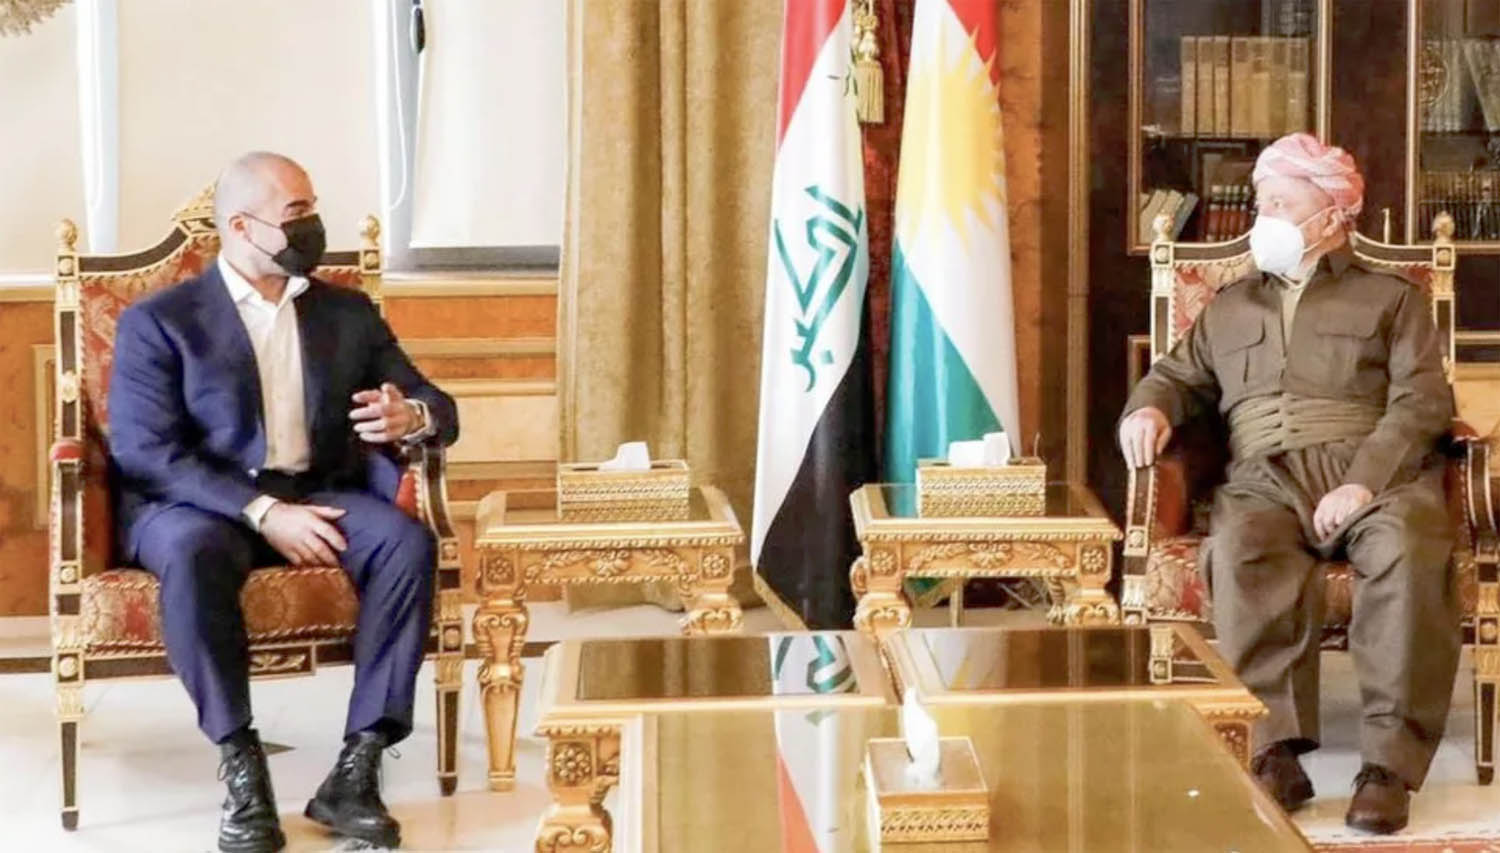 الزعيم الكردي مسعود بارزاني يستقبل رئيس الاتحاد الوطني بافل طالباني